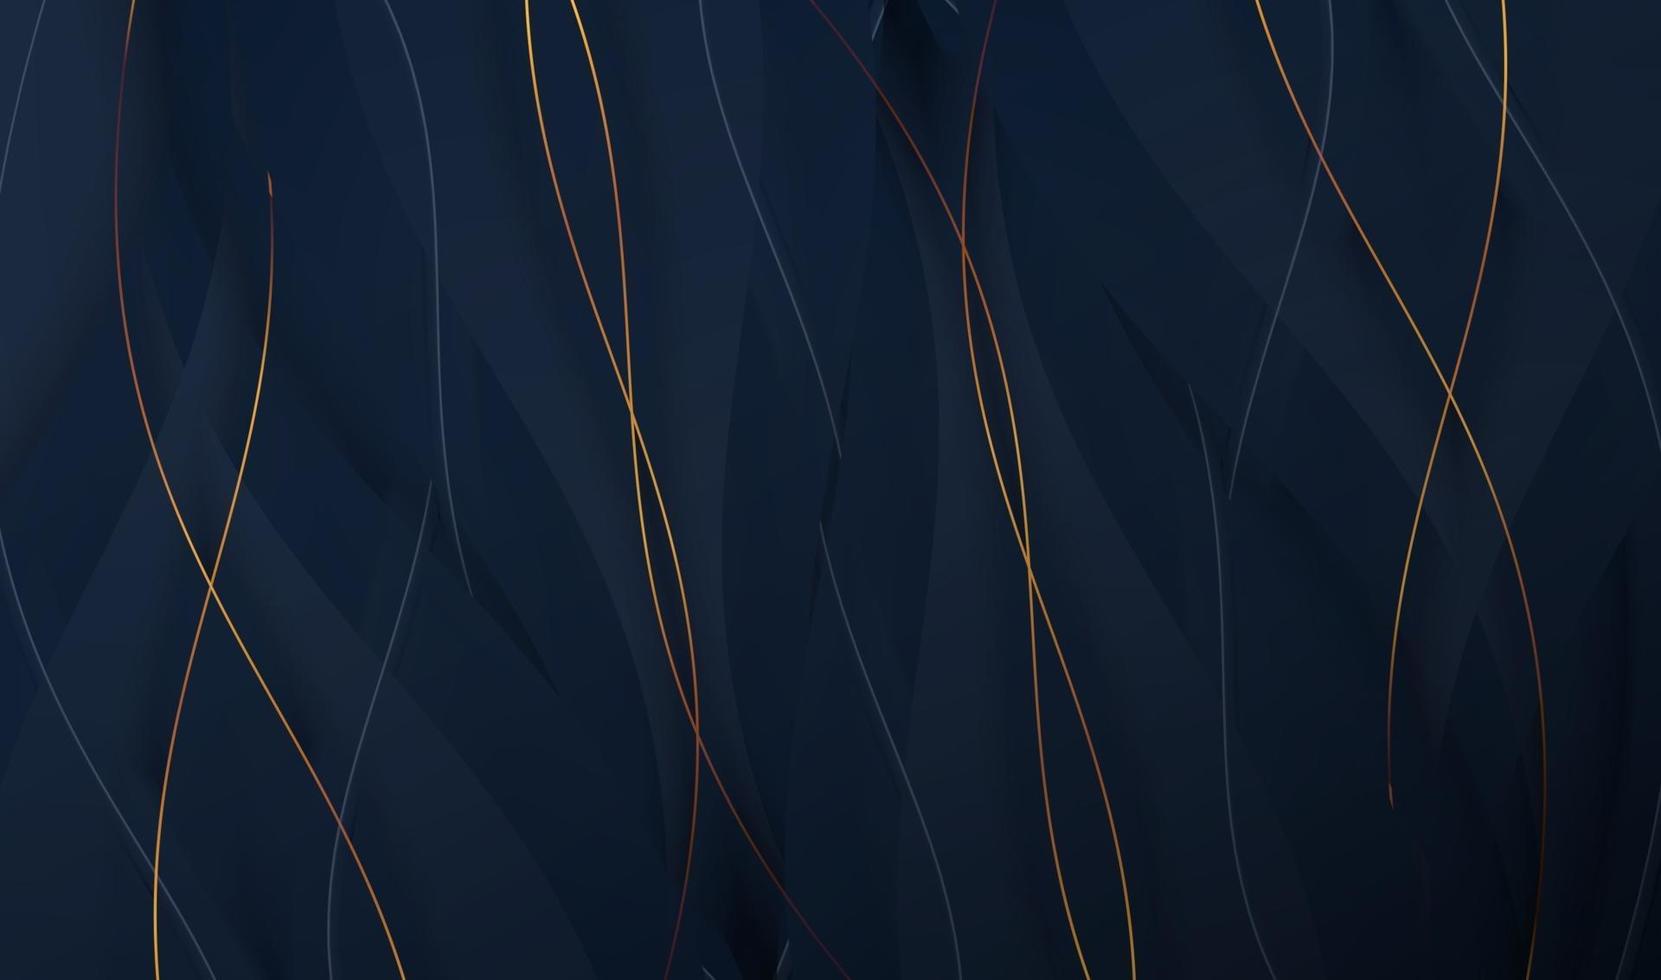 papier gesneden luxe gouden achtergrond met metalen textuur 3d abstract, voor cadeaubon, poster op muur poster sjabloon, bestemmingspagina, ui, ux, omslagboek, banner, vector